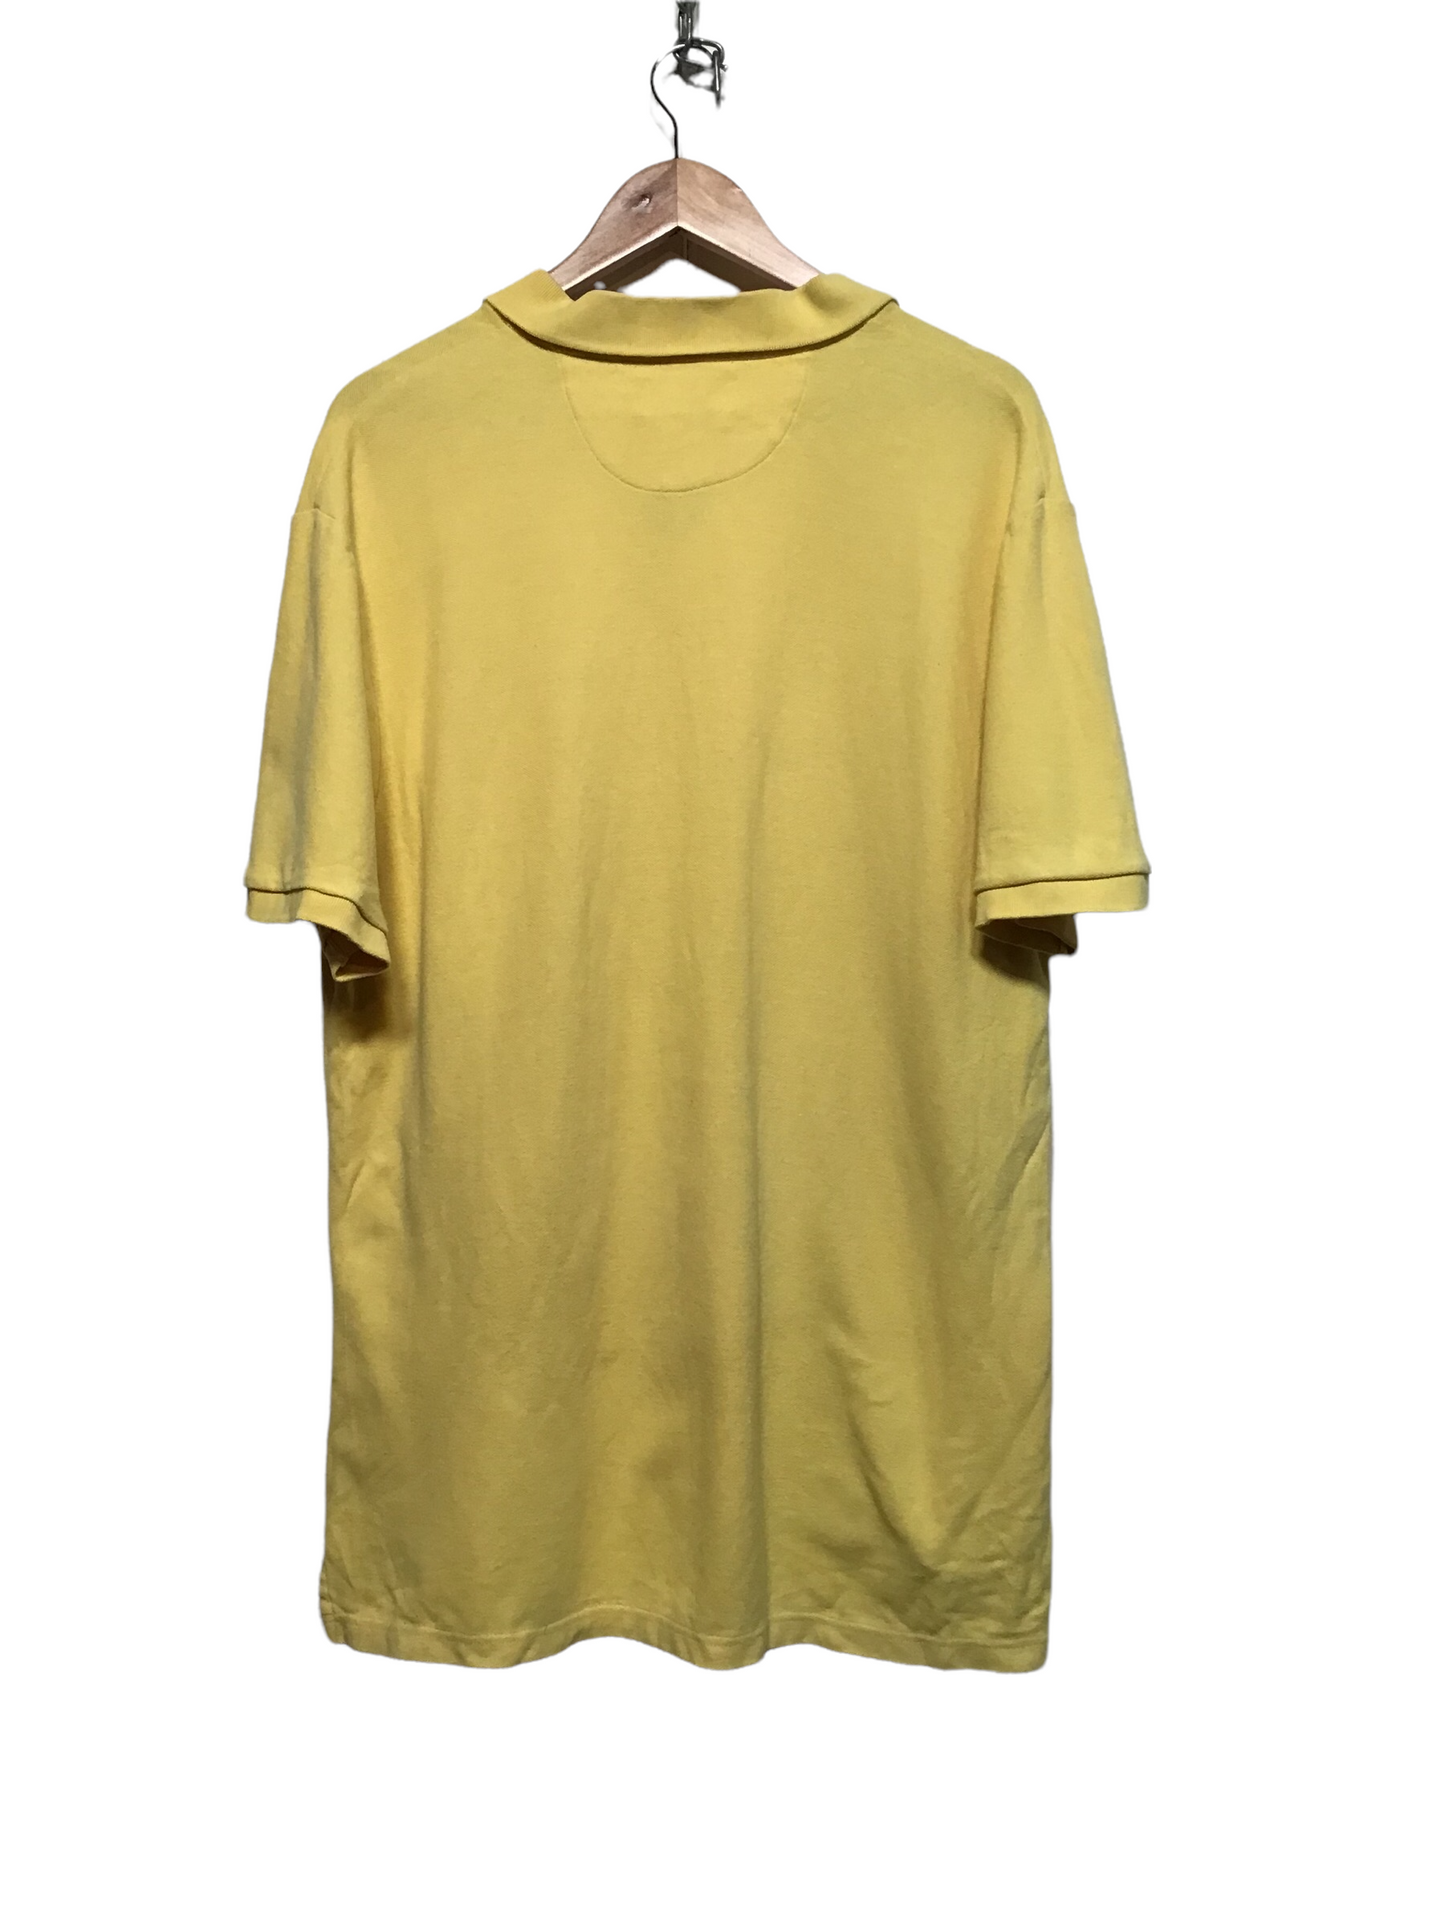 Chaps Polo Shirt (Size XL)